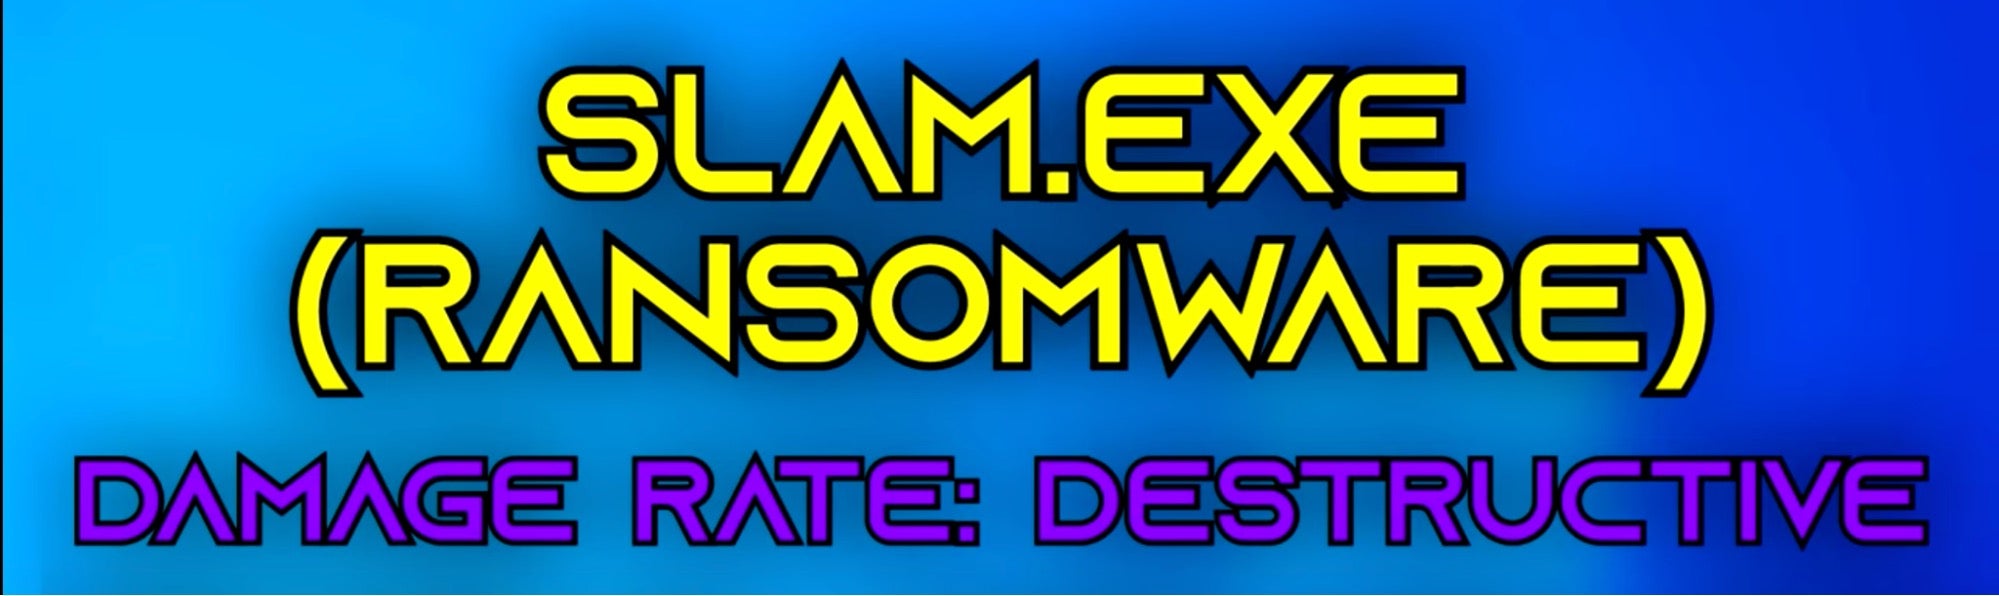 Slam ransomware builder video hosted on Youtube